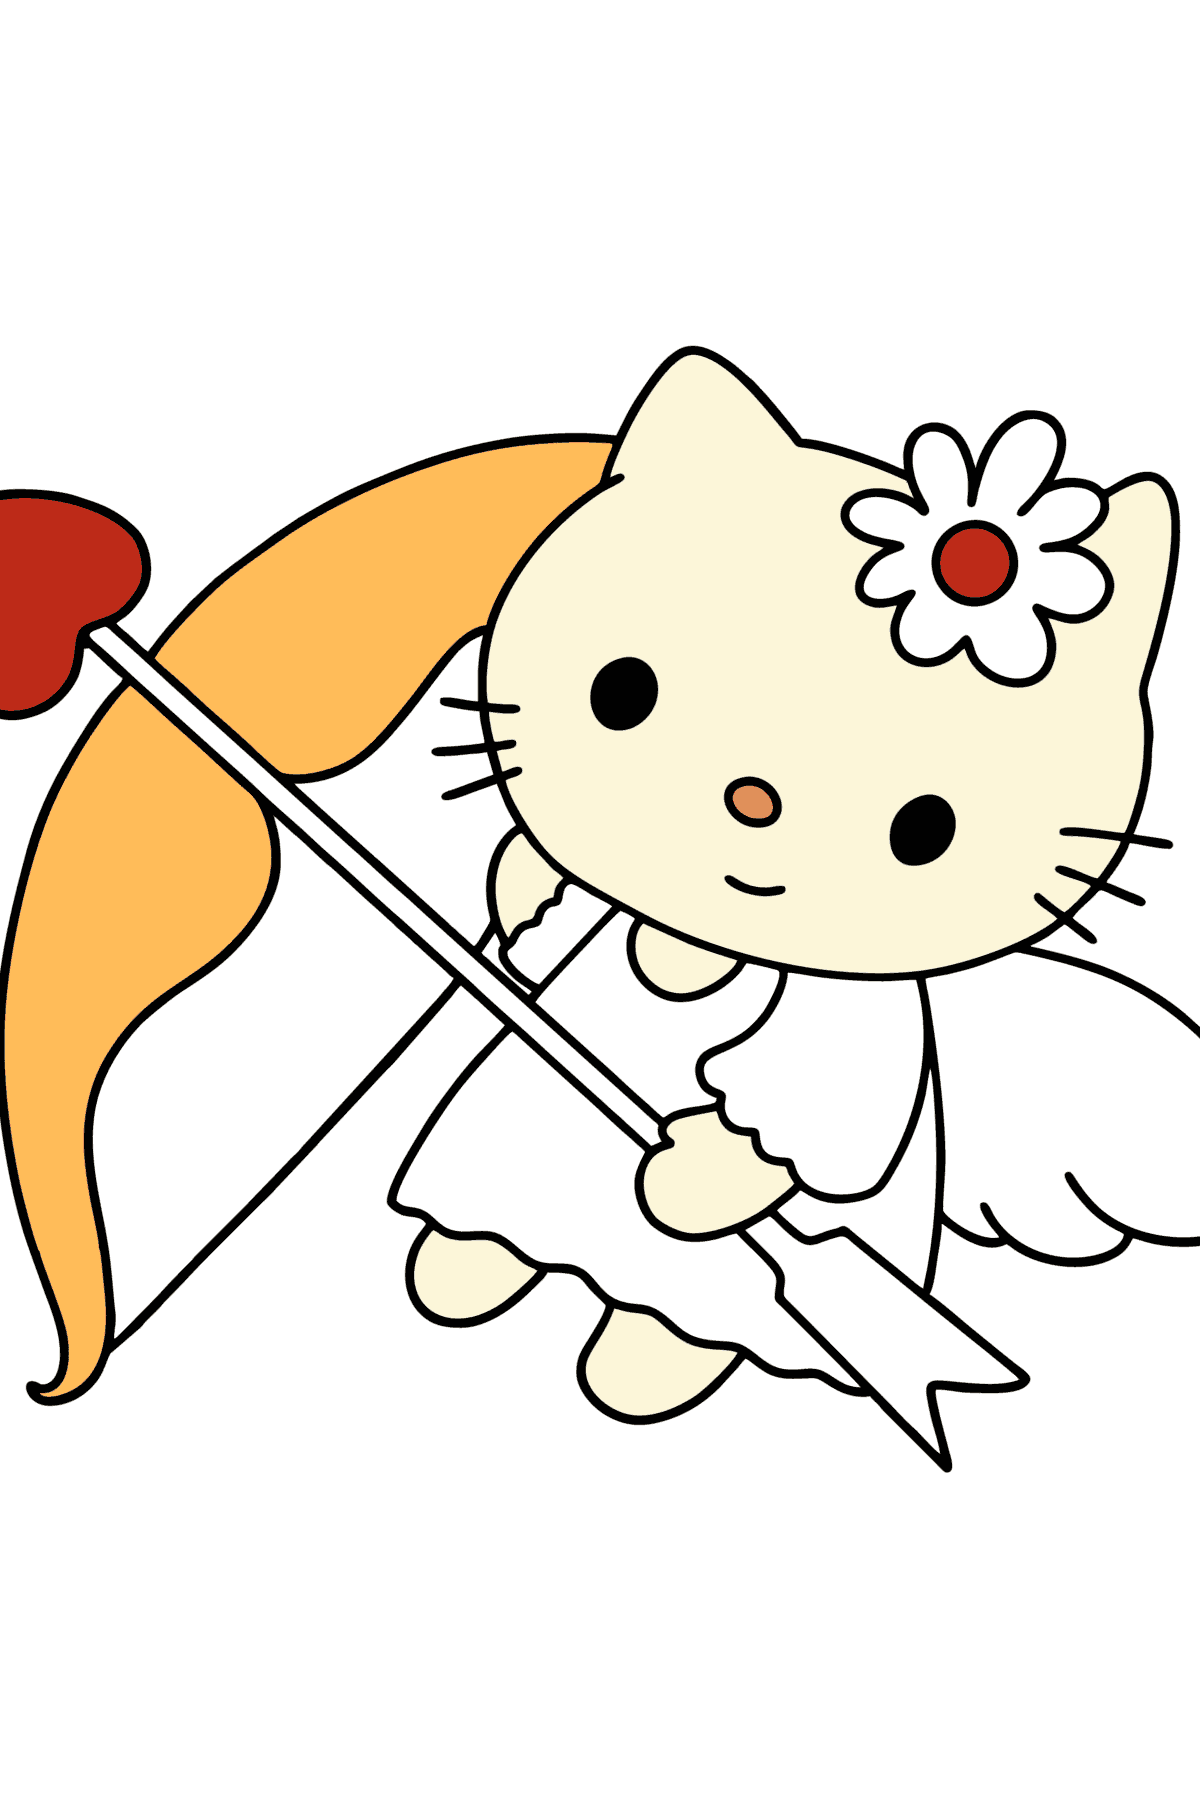 Boyama sayfası Hello Kitty Sevgililer Günü - Boyamalar çocuklar için